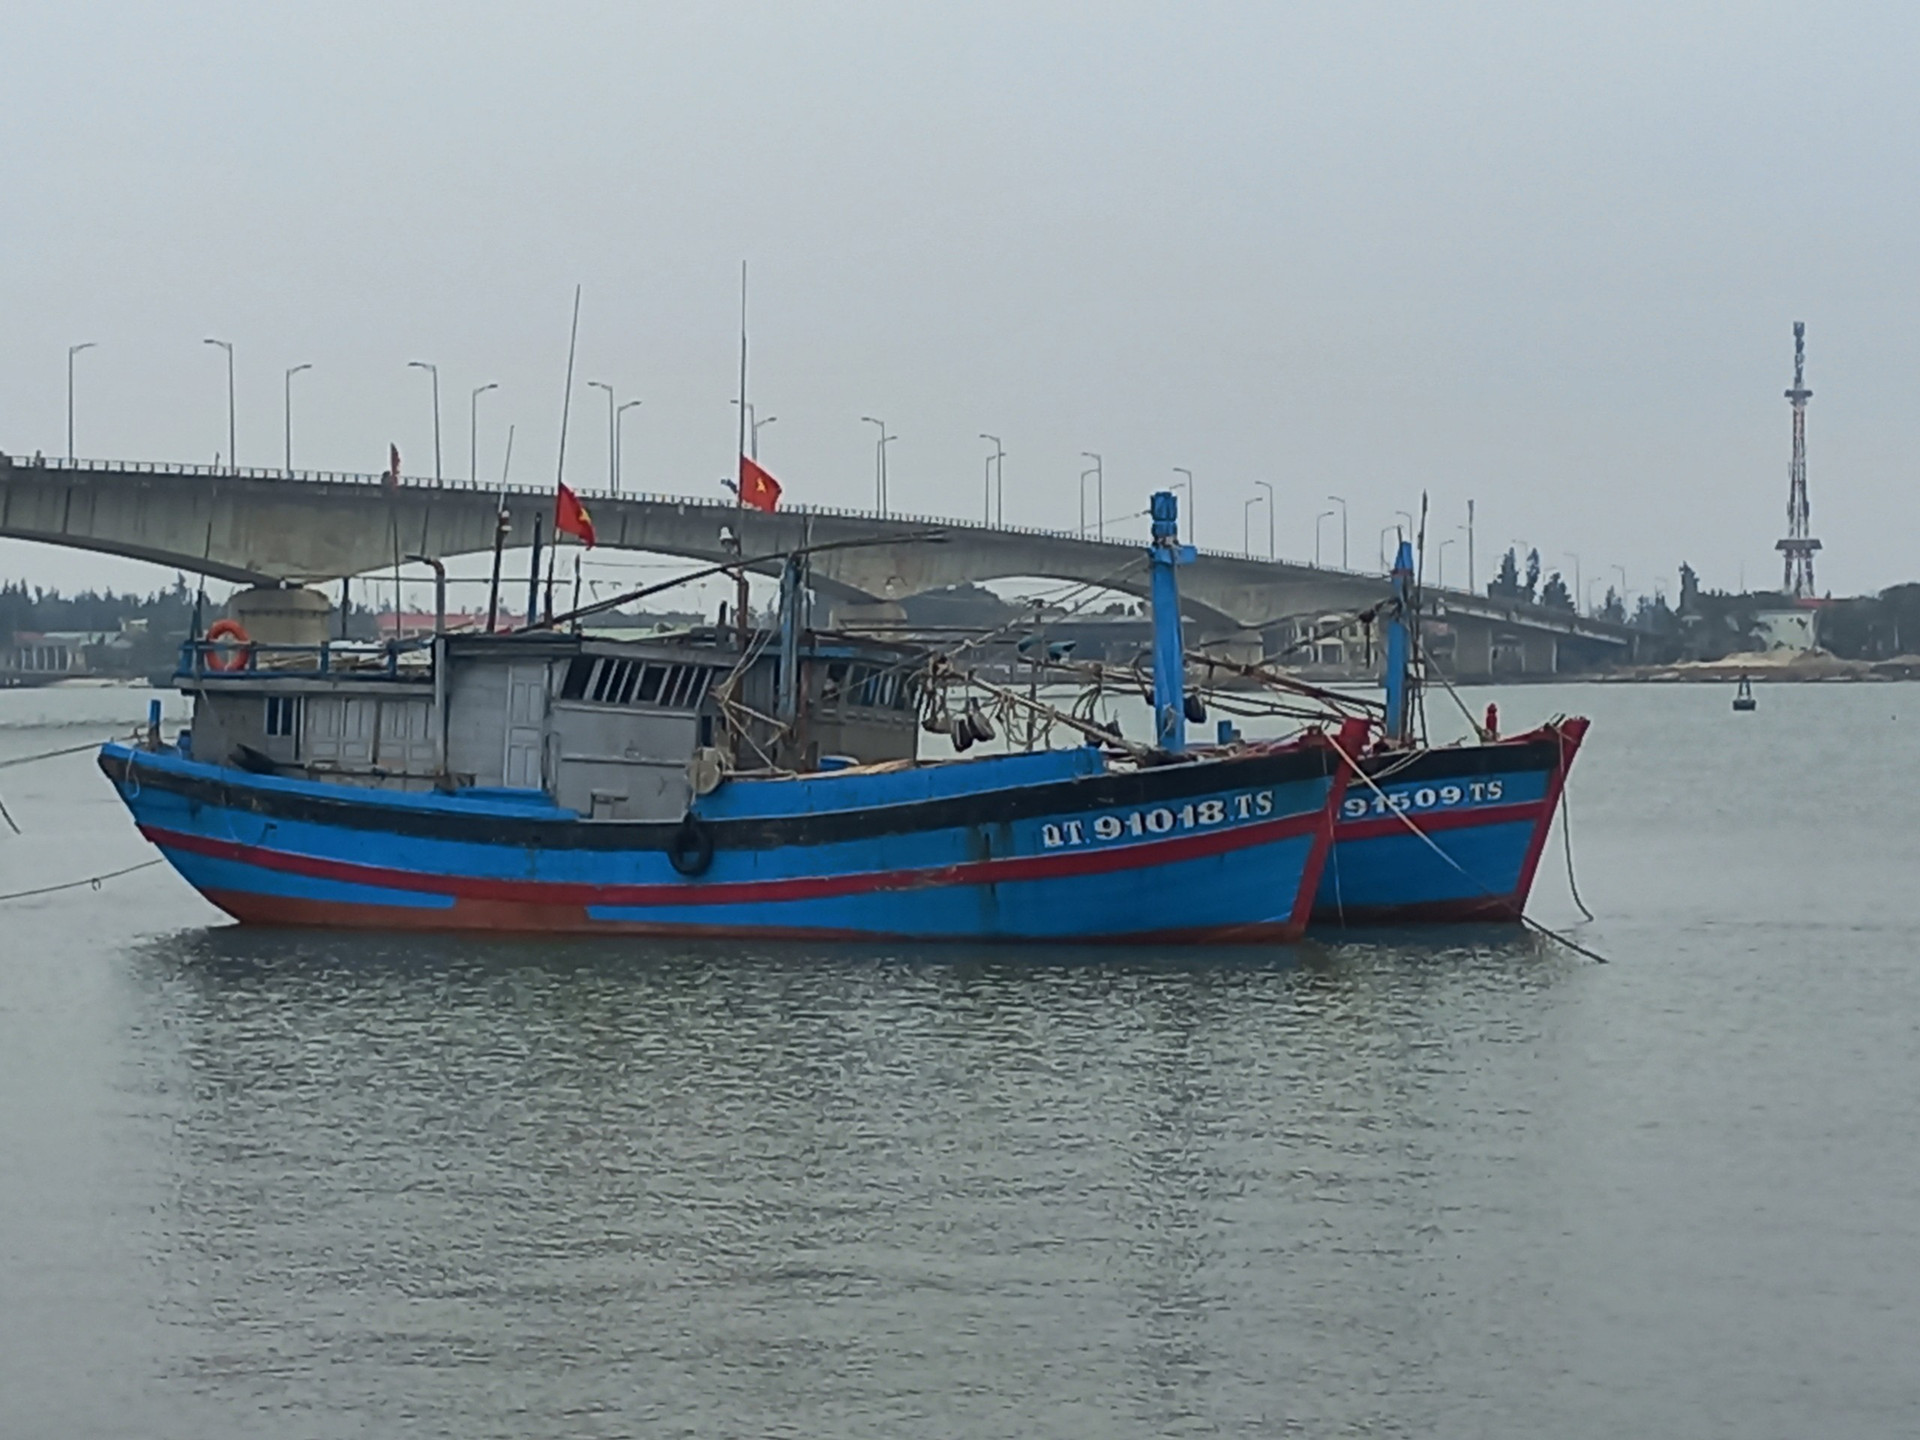 UBND tỉnh Quảng Trị yêu cầu tuyệt đối không cho các phương tiện ra biển (kể cả tàu cá) khi thời tiết, phương tiện không bảo đảm an toàn theo quy định.